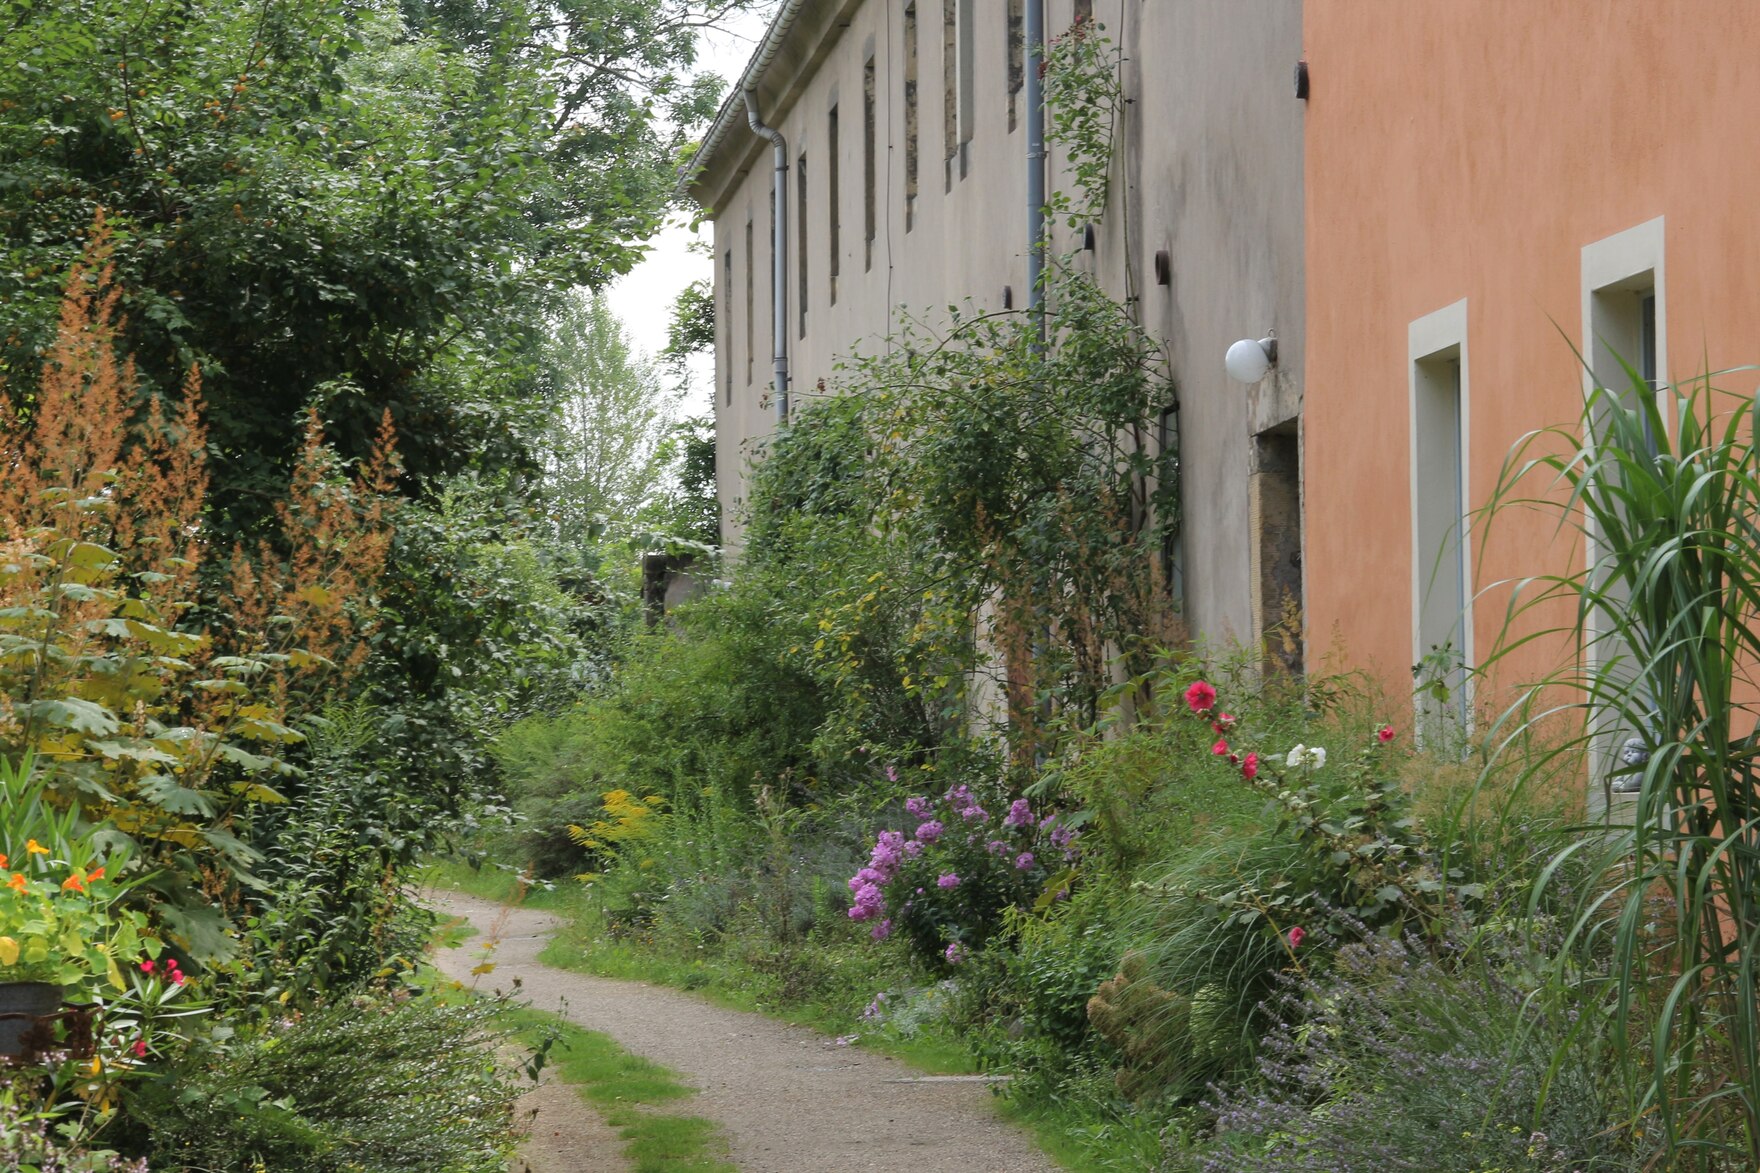 Extensive Freiraumgestaltung im Rittergut Jahnishausen, rechts Rittergutsgebäude, entlang der Gebäudemauer ein Beet mit Gräsern, Blumen, rankenden Pflanzen an der Hausmauer. Mittig des Bildes ein Weg.